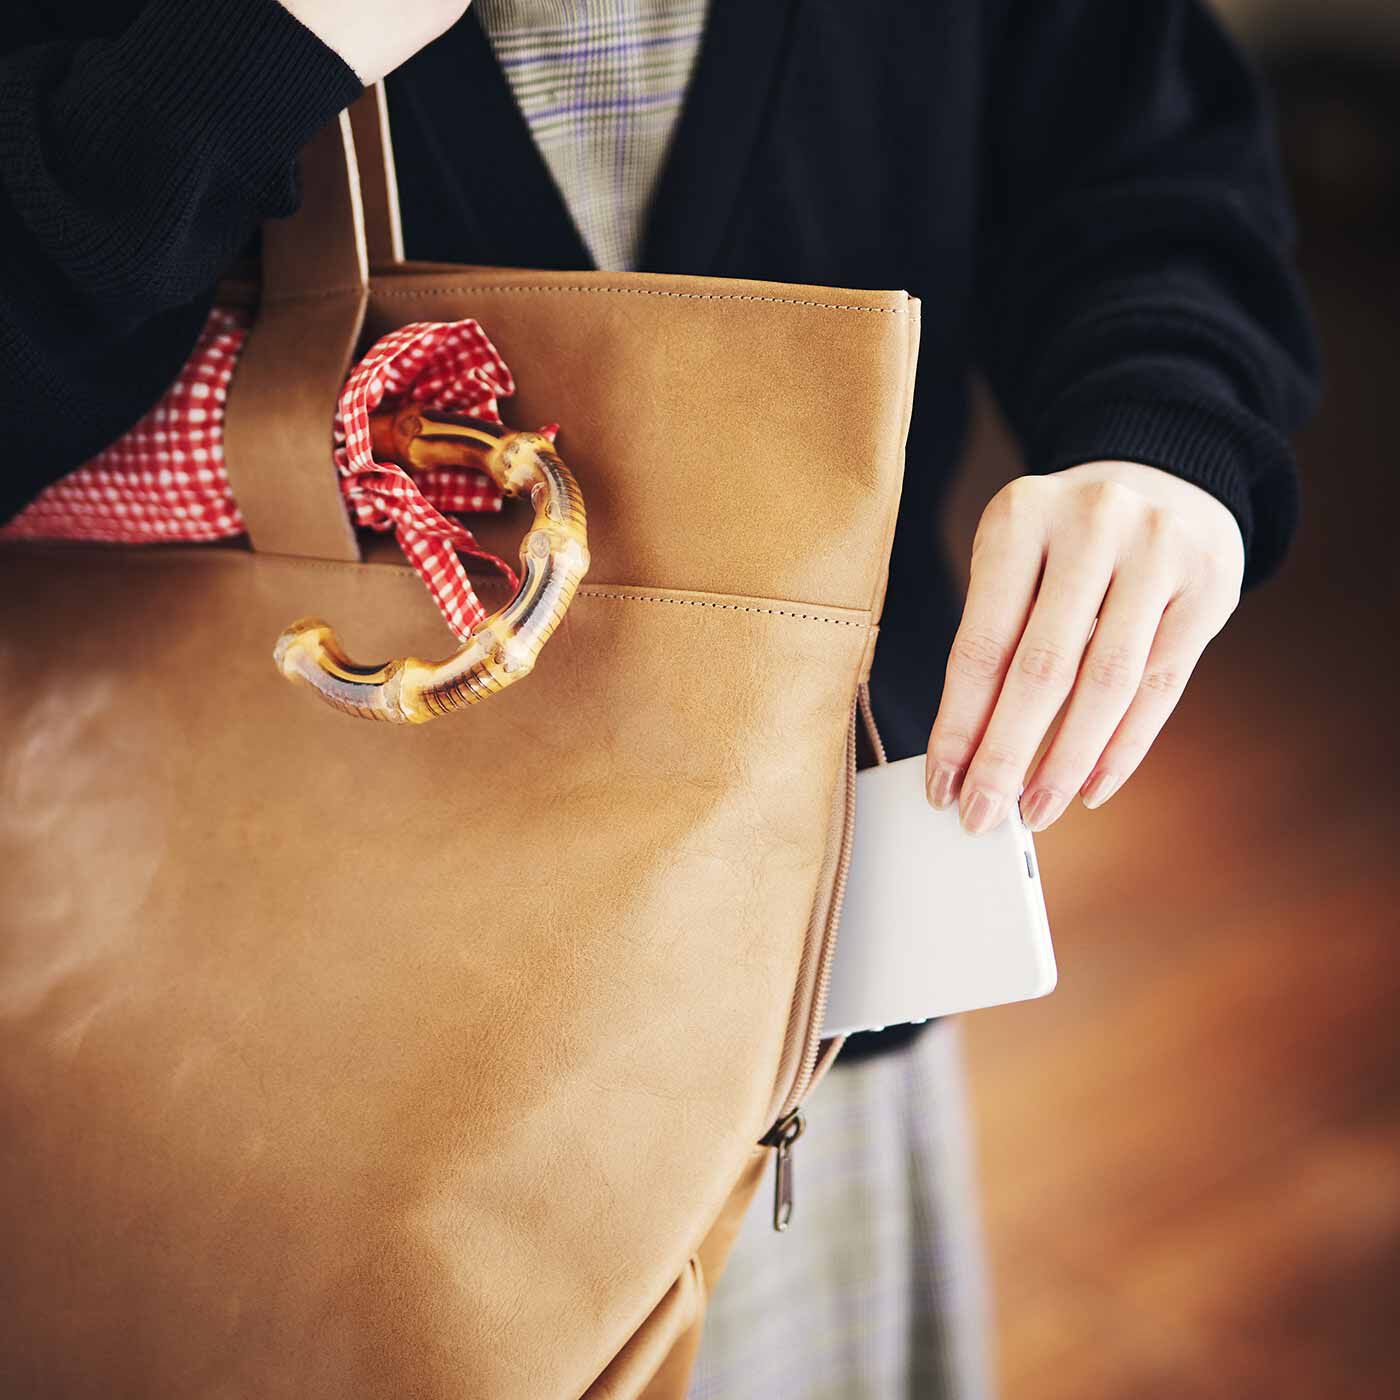 ＆Stories|プロダクトデザイナーと作った 職人本革のお仕事鞄〈ミルクティーベージュ〉[本革　鞄：日本製]|外側のファスナーポケットや内ポケットなど、必要なものがすぐ取り出せる工夫も充実。